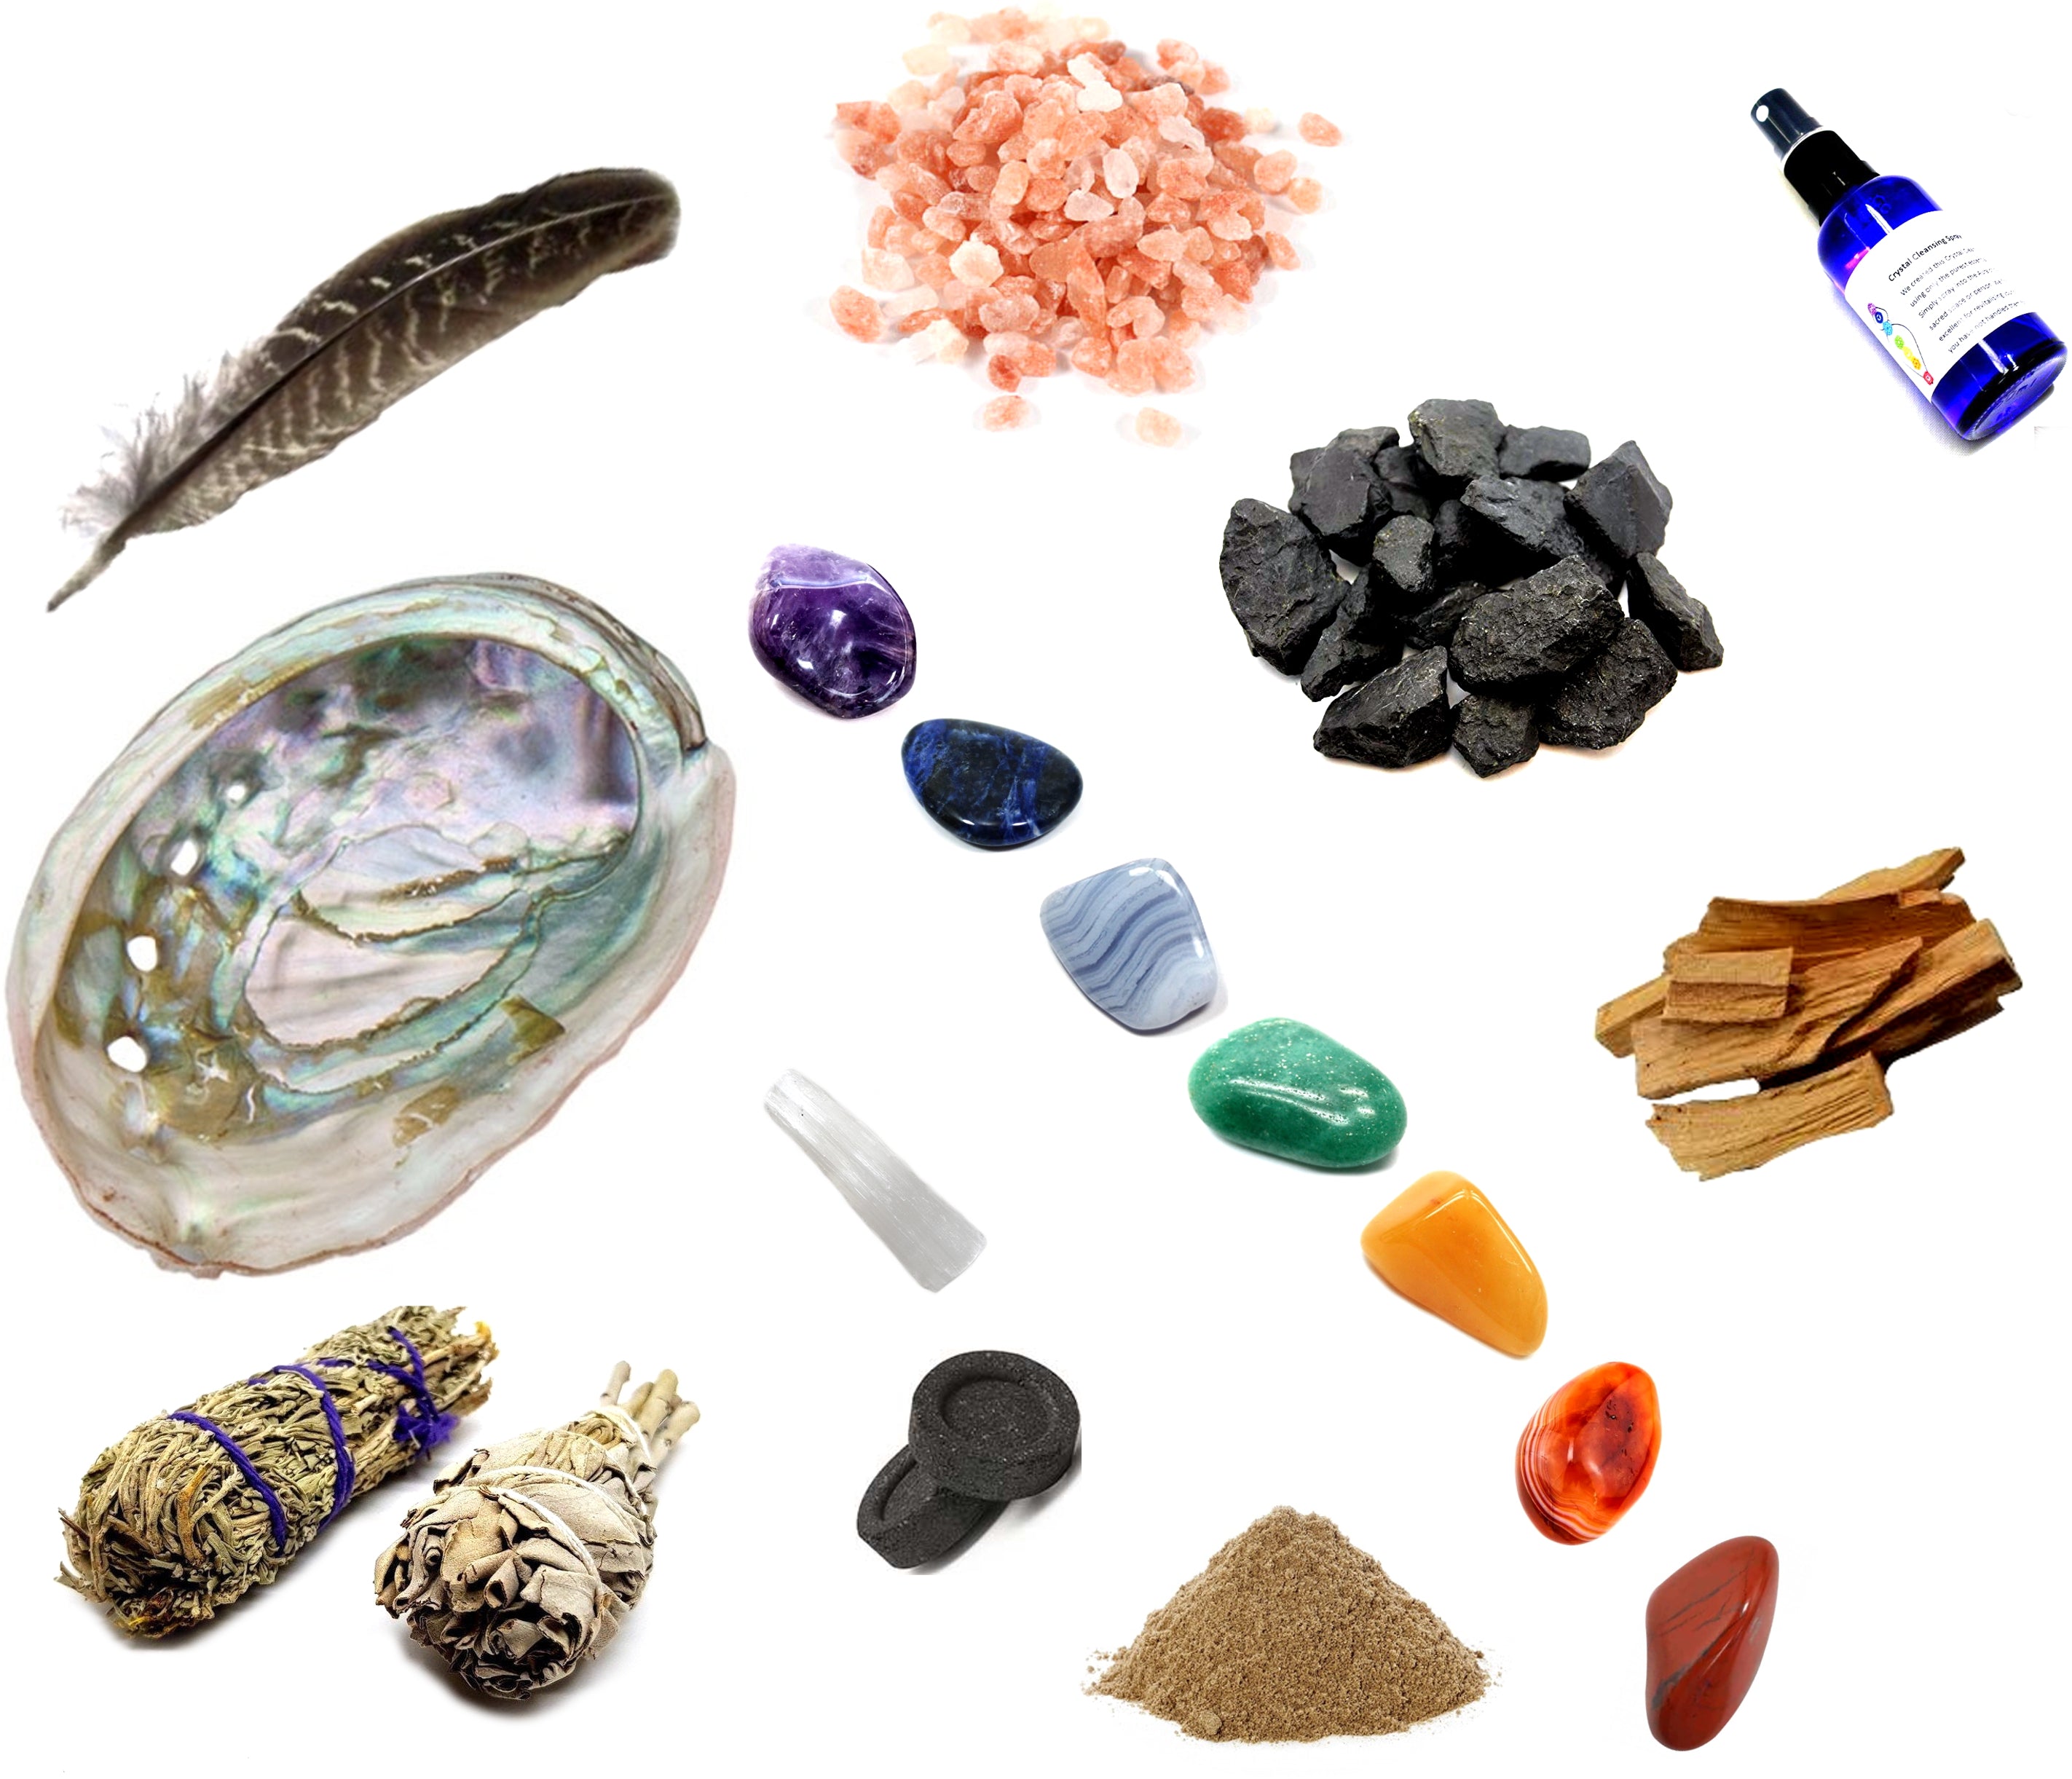 Feather, Sage, Spray bottle, minerals, red, orange, yellow, green, light blue, dark blue and purple